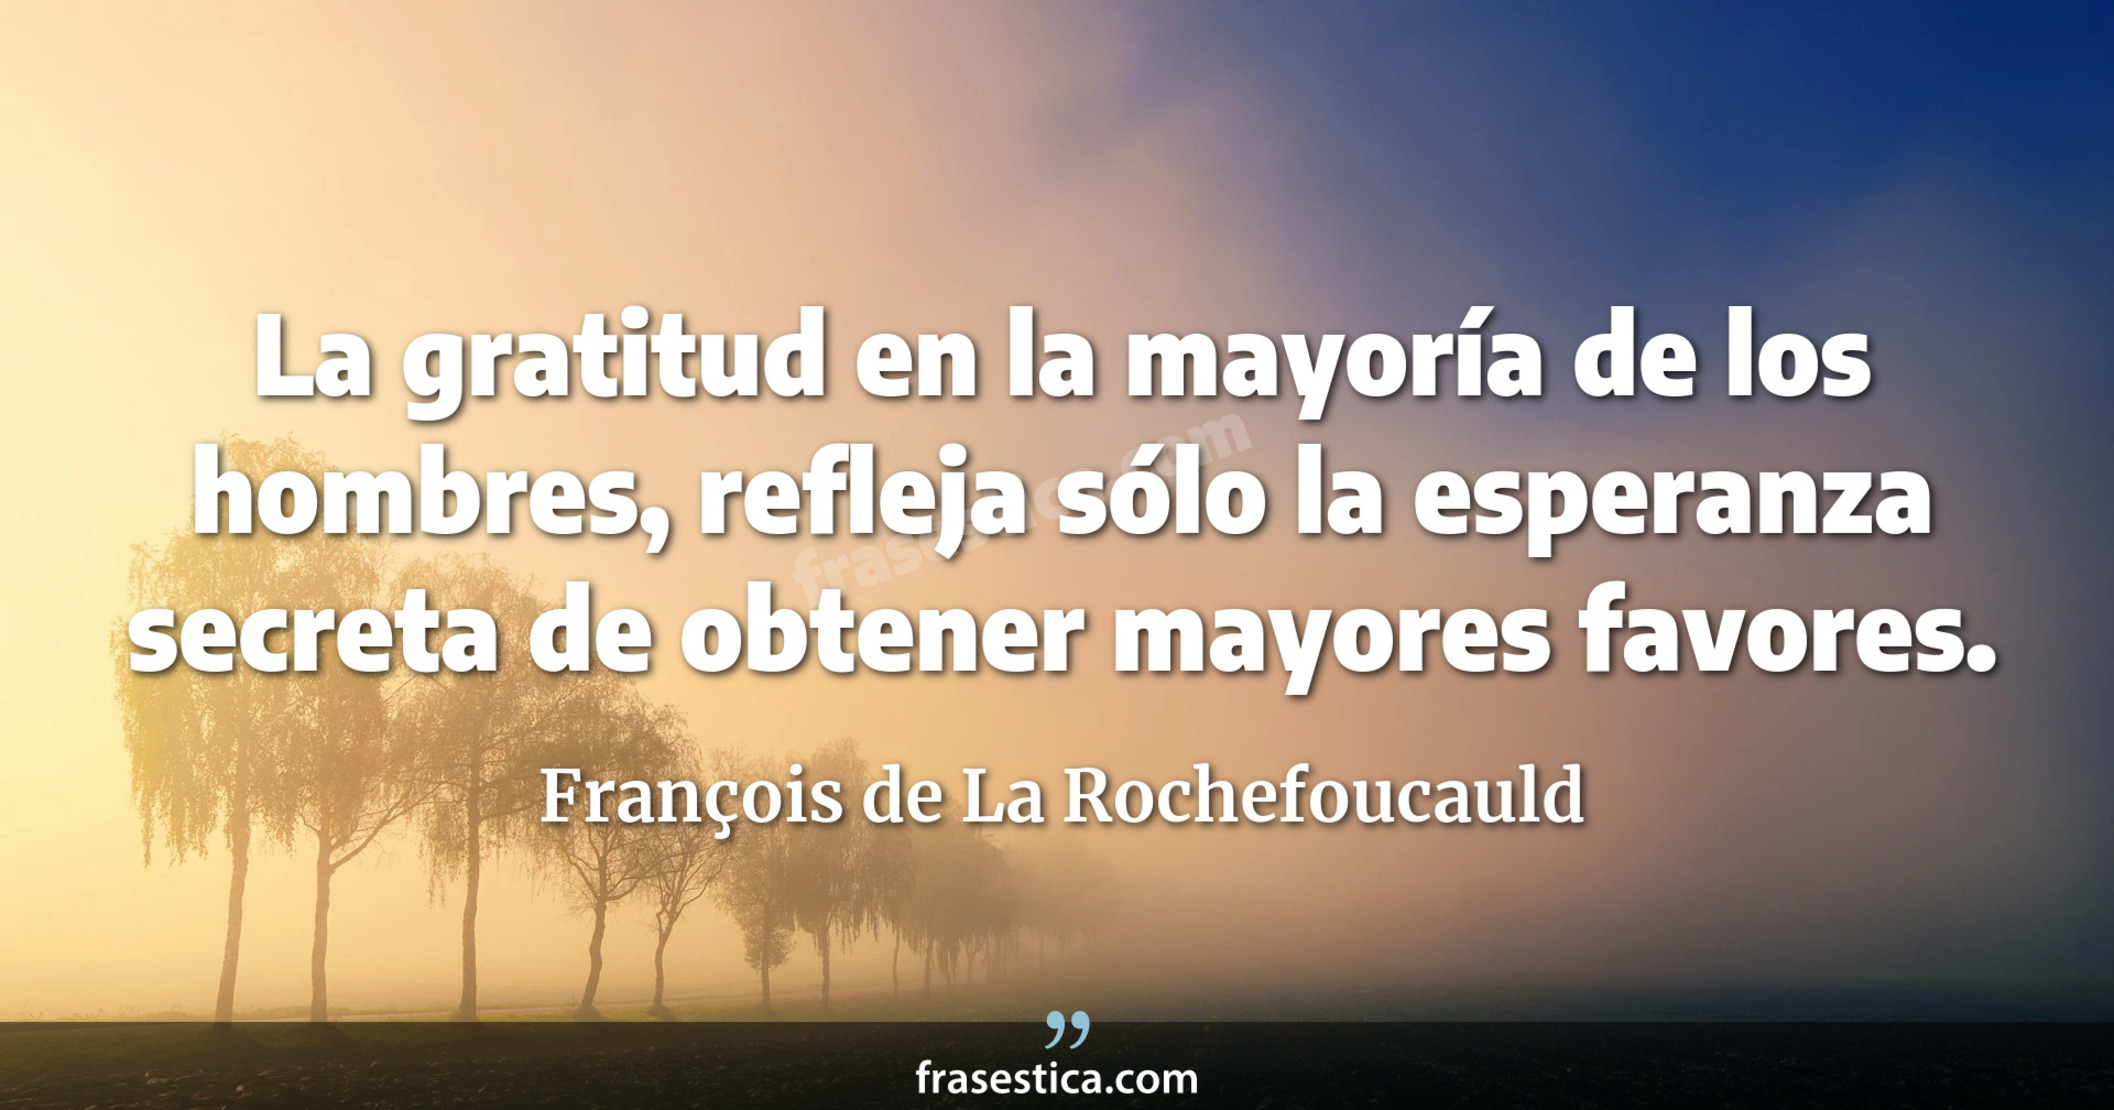 La gratitud en la mayoría de los hombres, refleja sólo la esperanza secreta de obtener mayores favores. - François de La Rochefoucauld